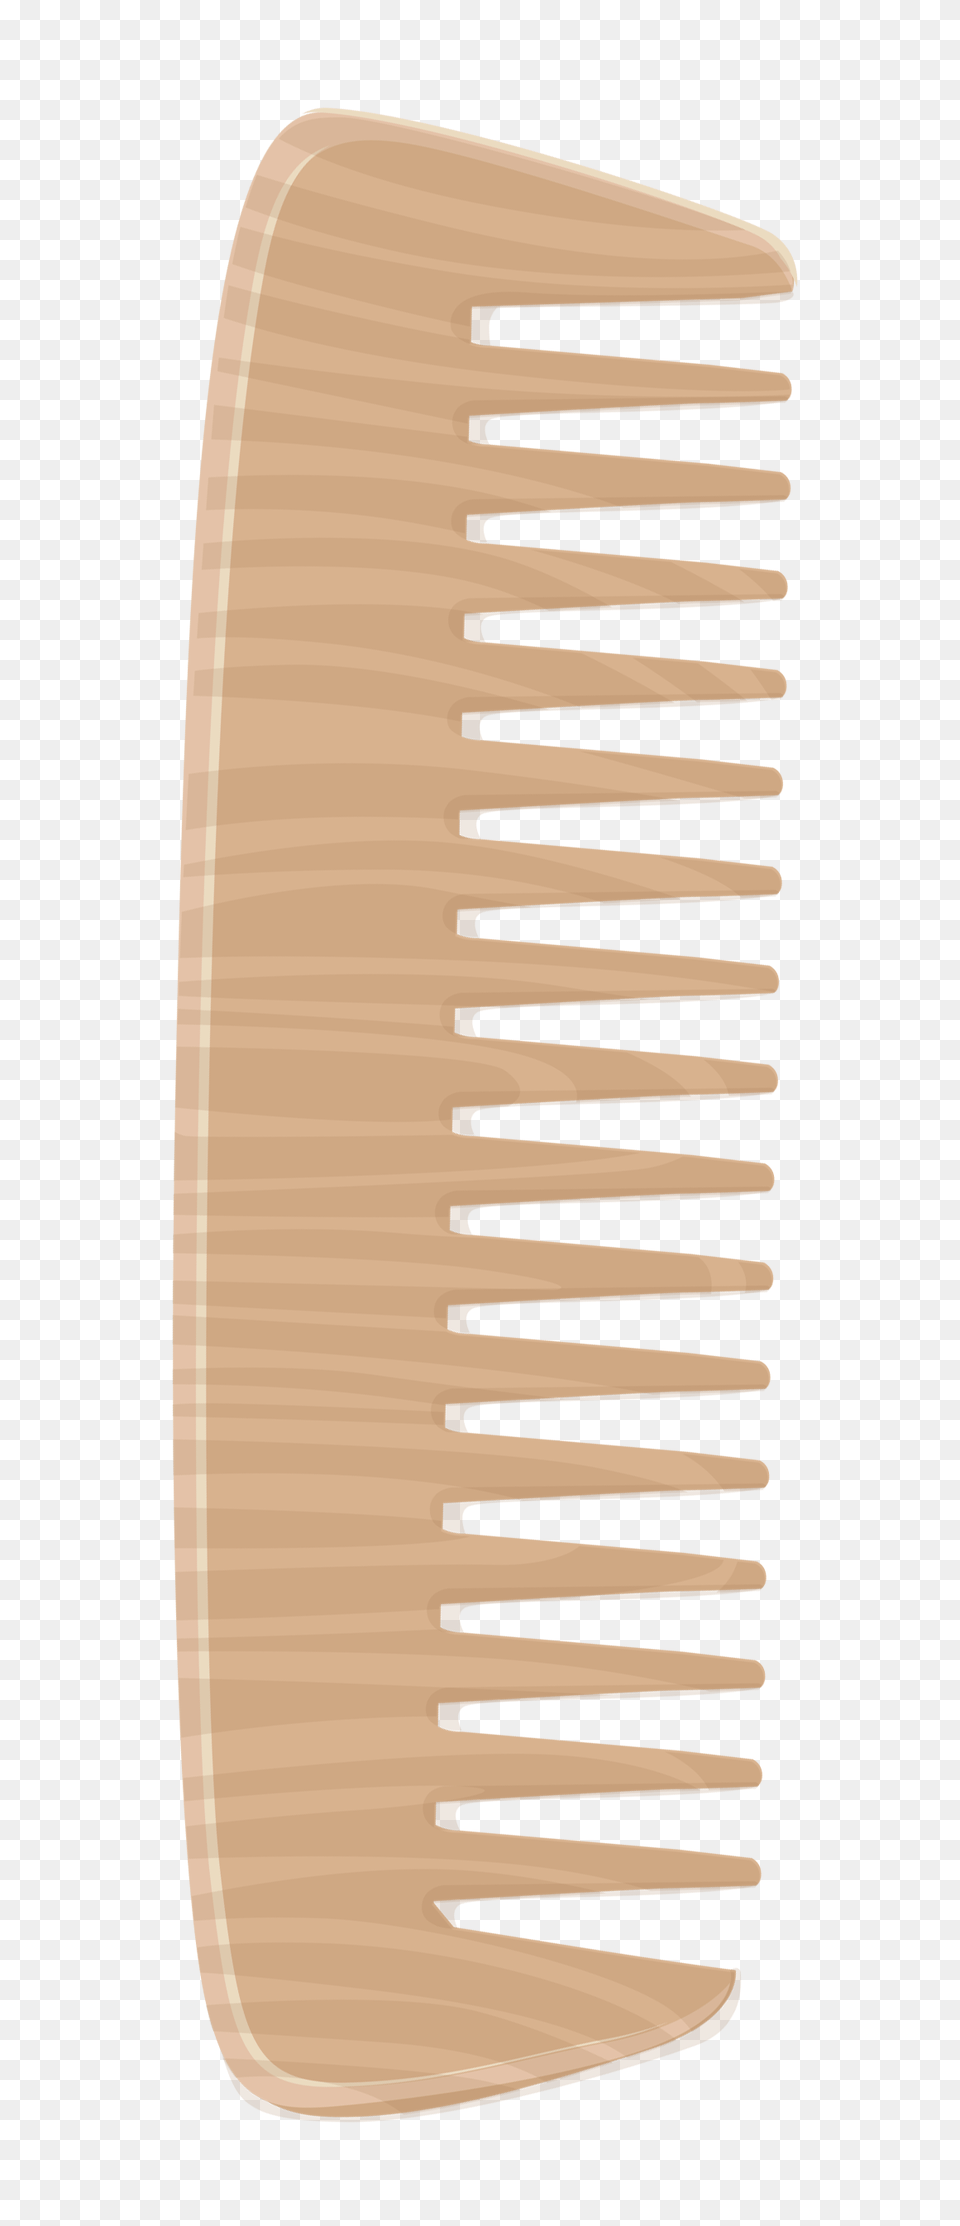 Wooden Comb Clipart Png